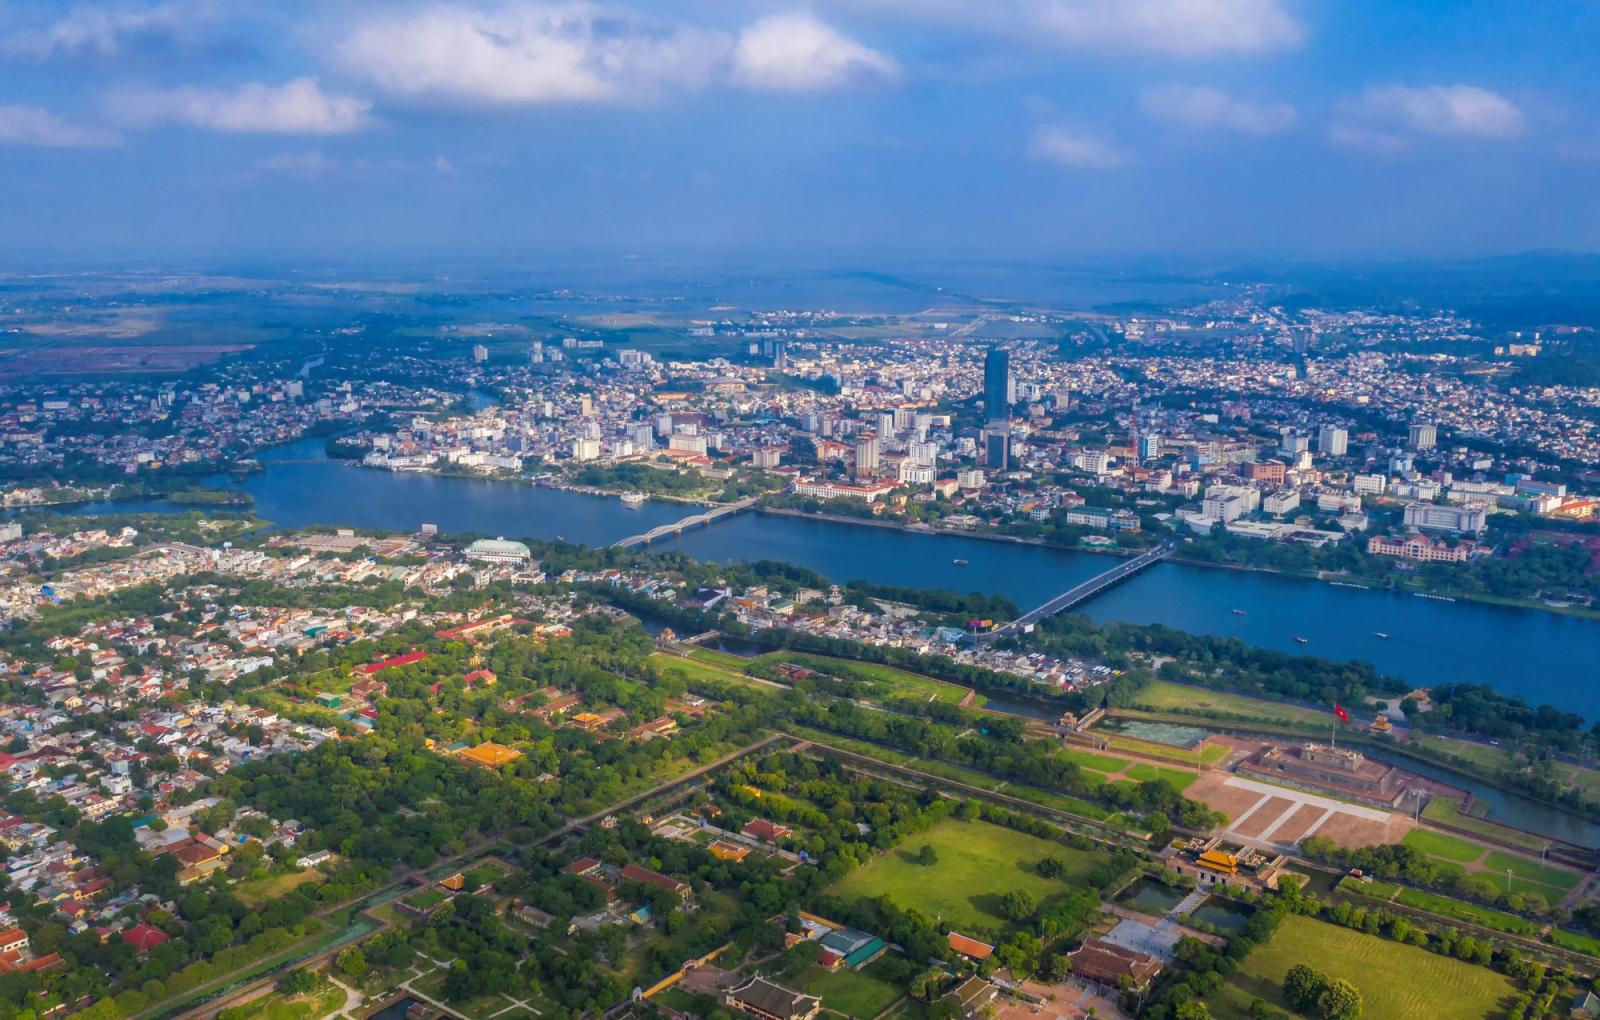 Hình ảnh một góc thành phố Huế nhìn từ trên cao với các khu dân cư thấp tầng hai bên bờ sông Hương